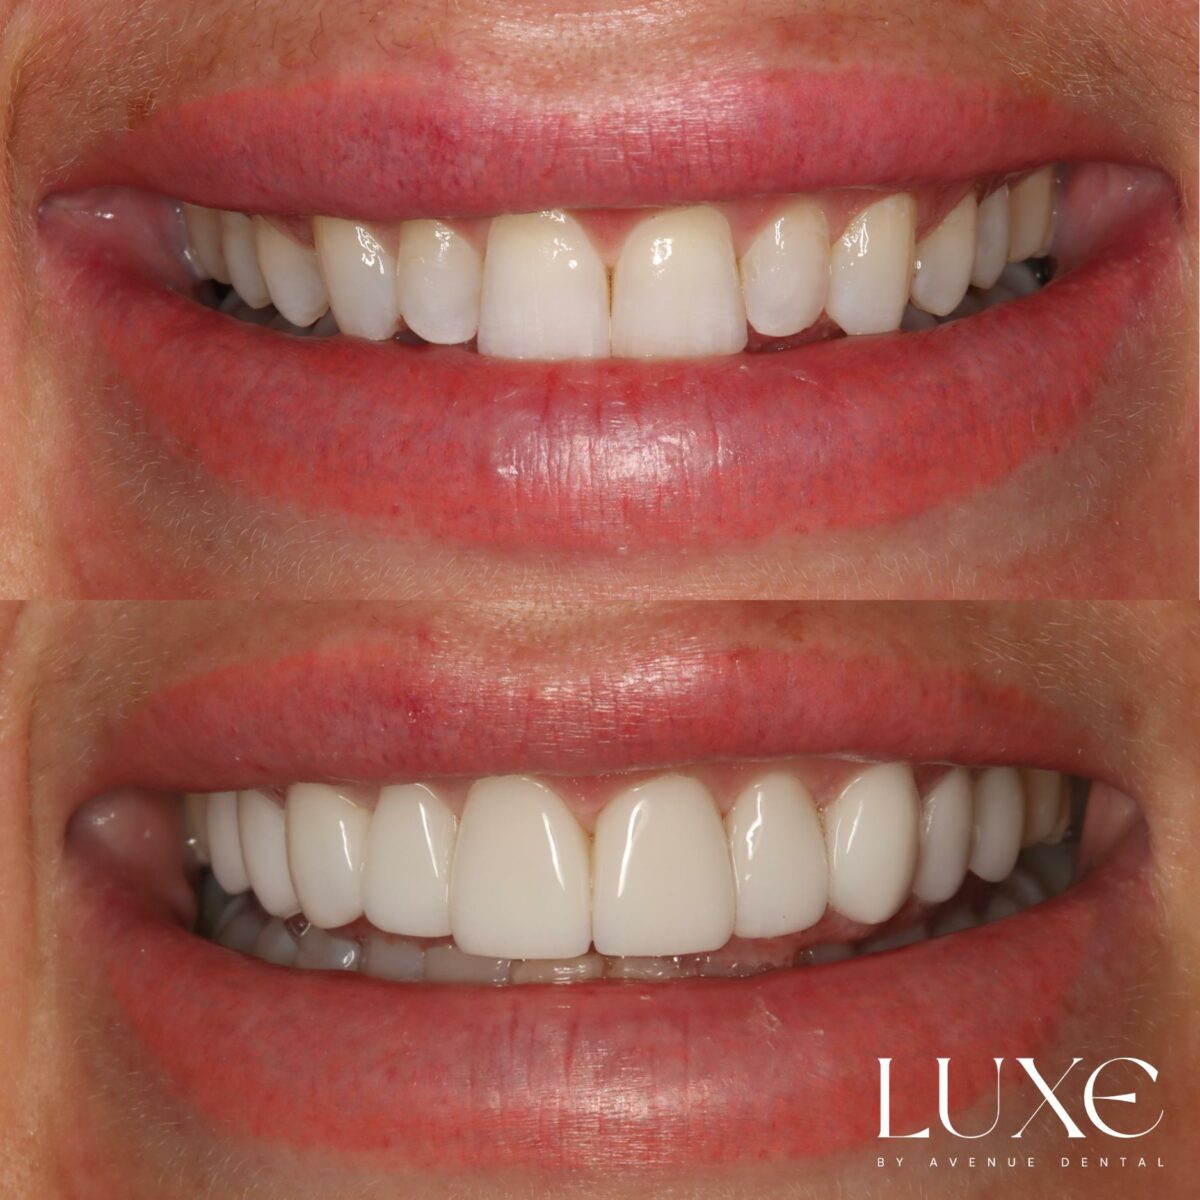 Luxe Dental Veneers Results (2)